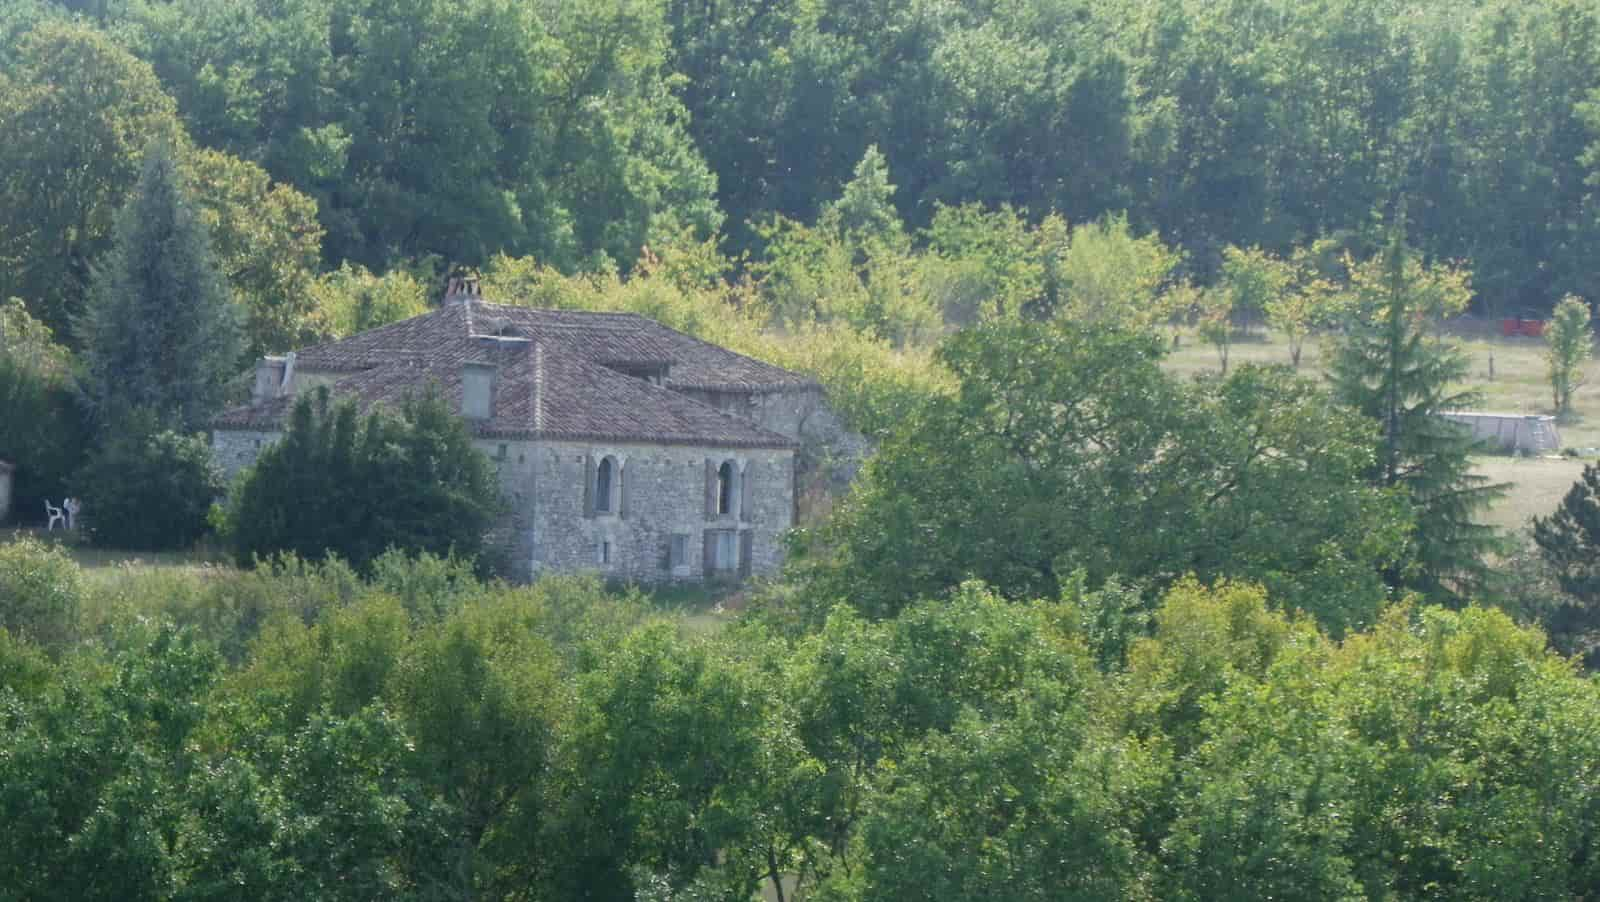 Gite 15, 16, 18 Personnes Entre Fleuves, Lot, Tarn, Aveyron encequiconcerne Chambre D Hote Agen